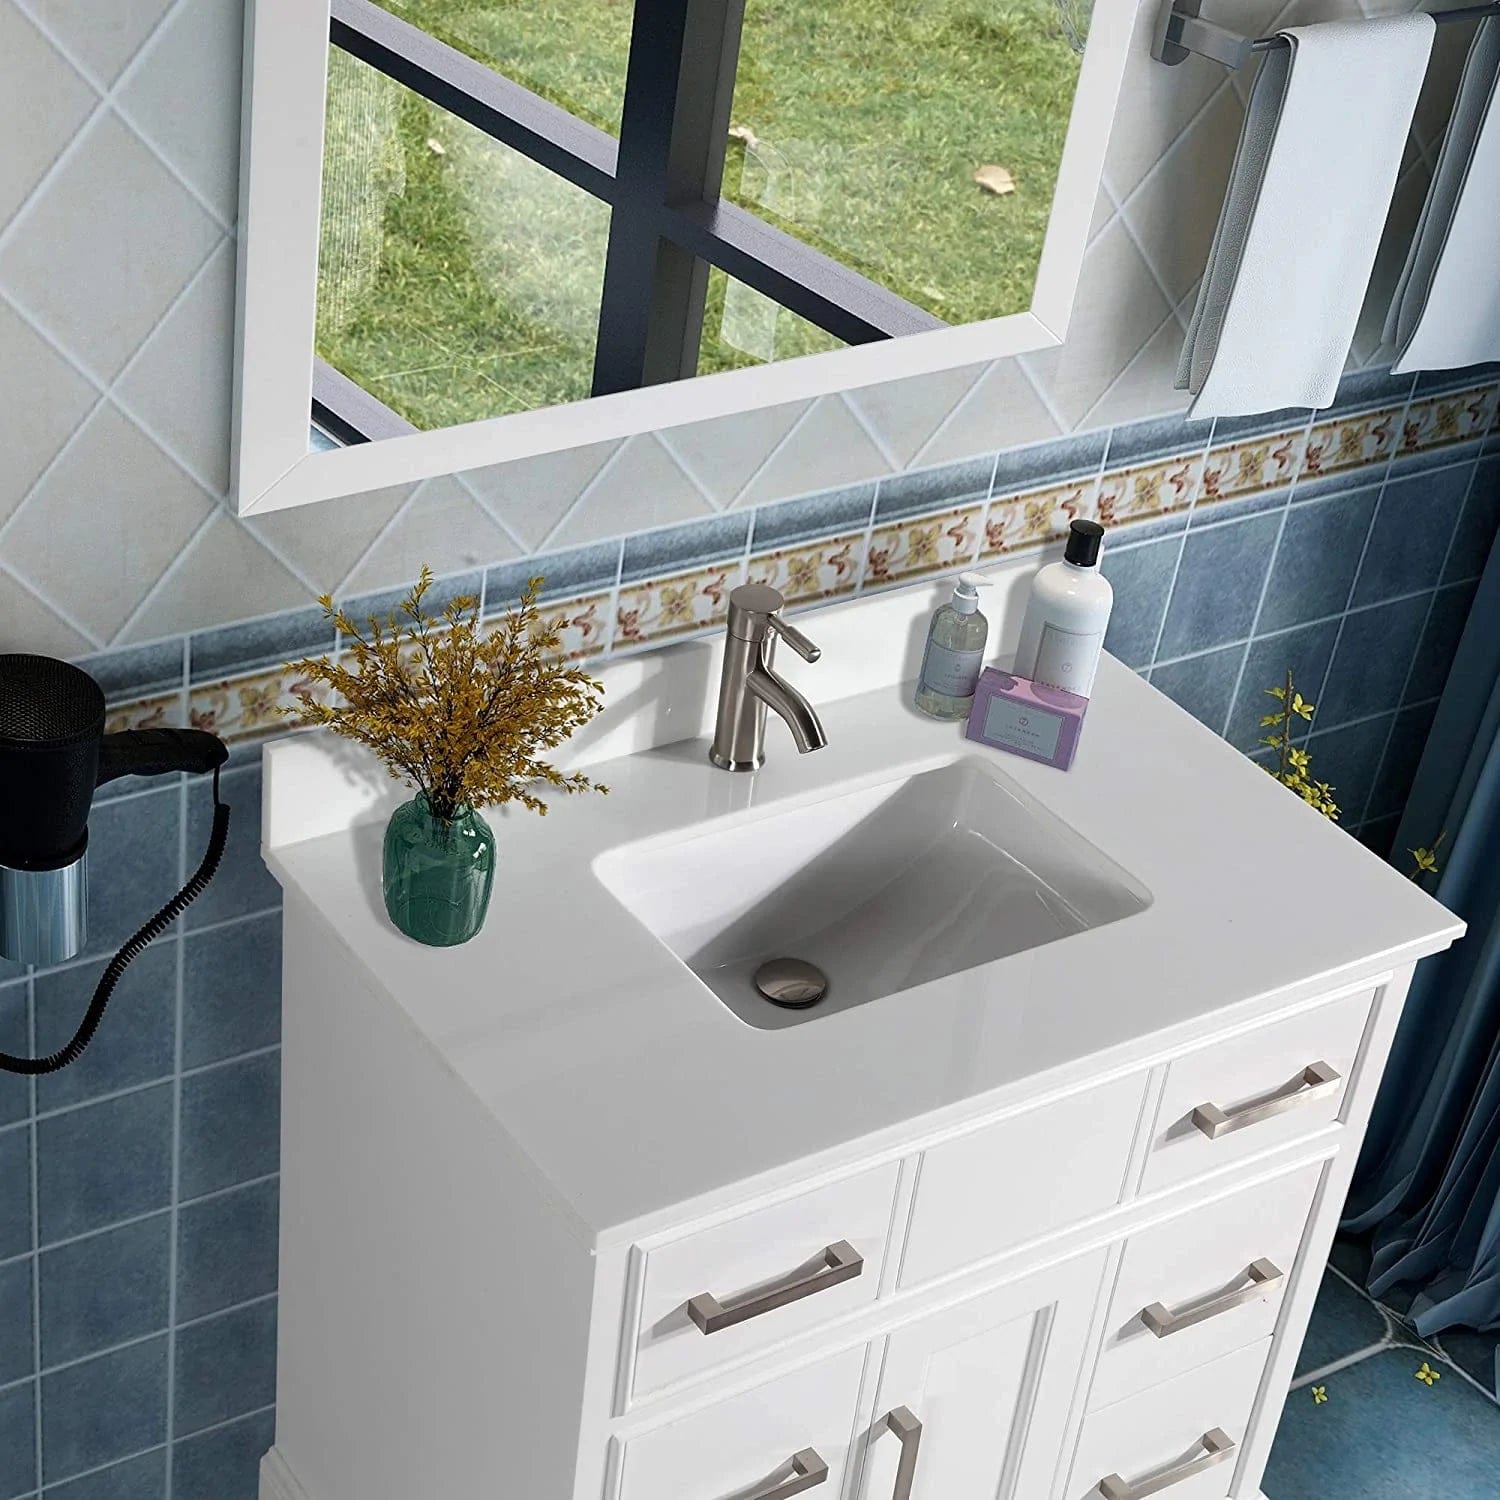 36 in. Single Sink Bathroom Vanity Set in White - Decohub Home